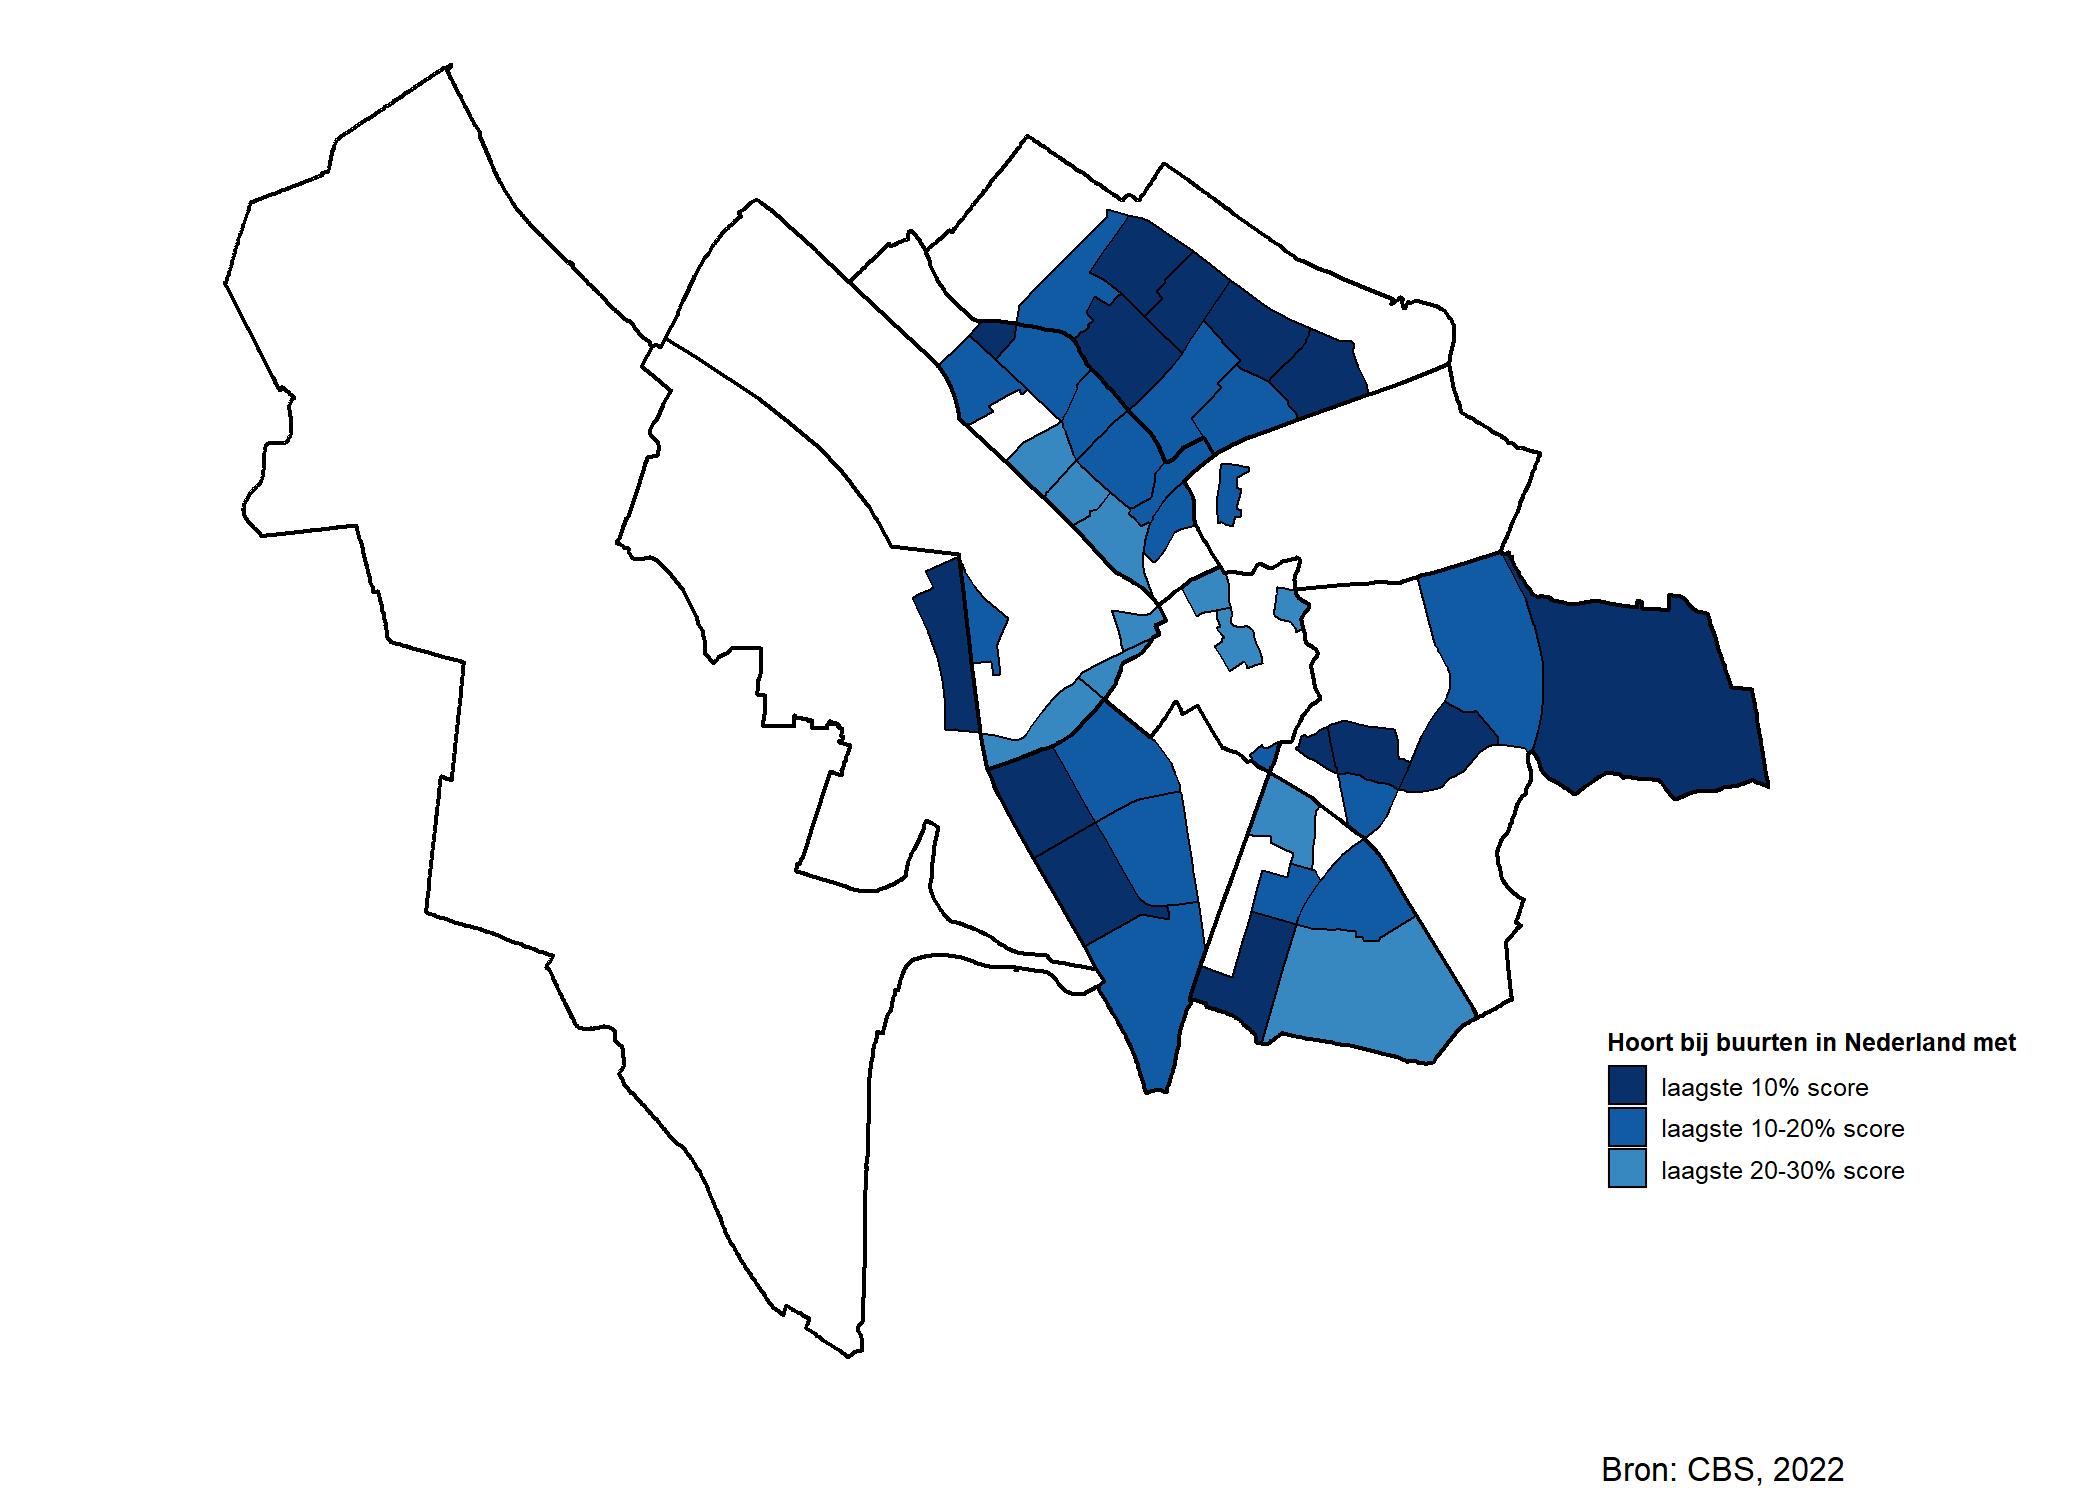 Voornamelijk in Noordwest, Overvecht, Zuid en Zuidwest vallen buurten die horen bij de laagste 10%, 10-20% en 20-30% score van Nederland.